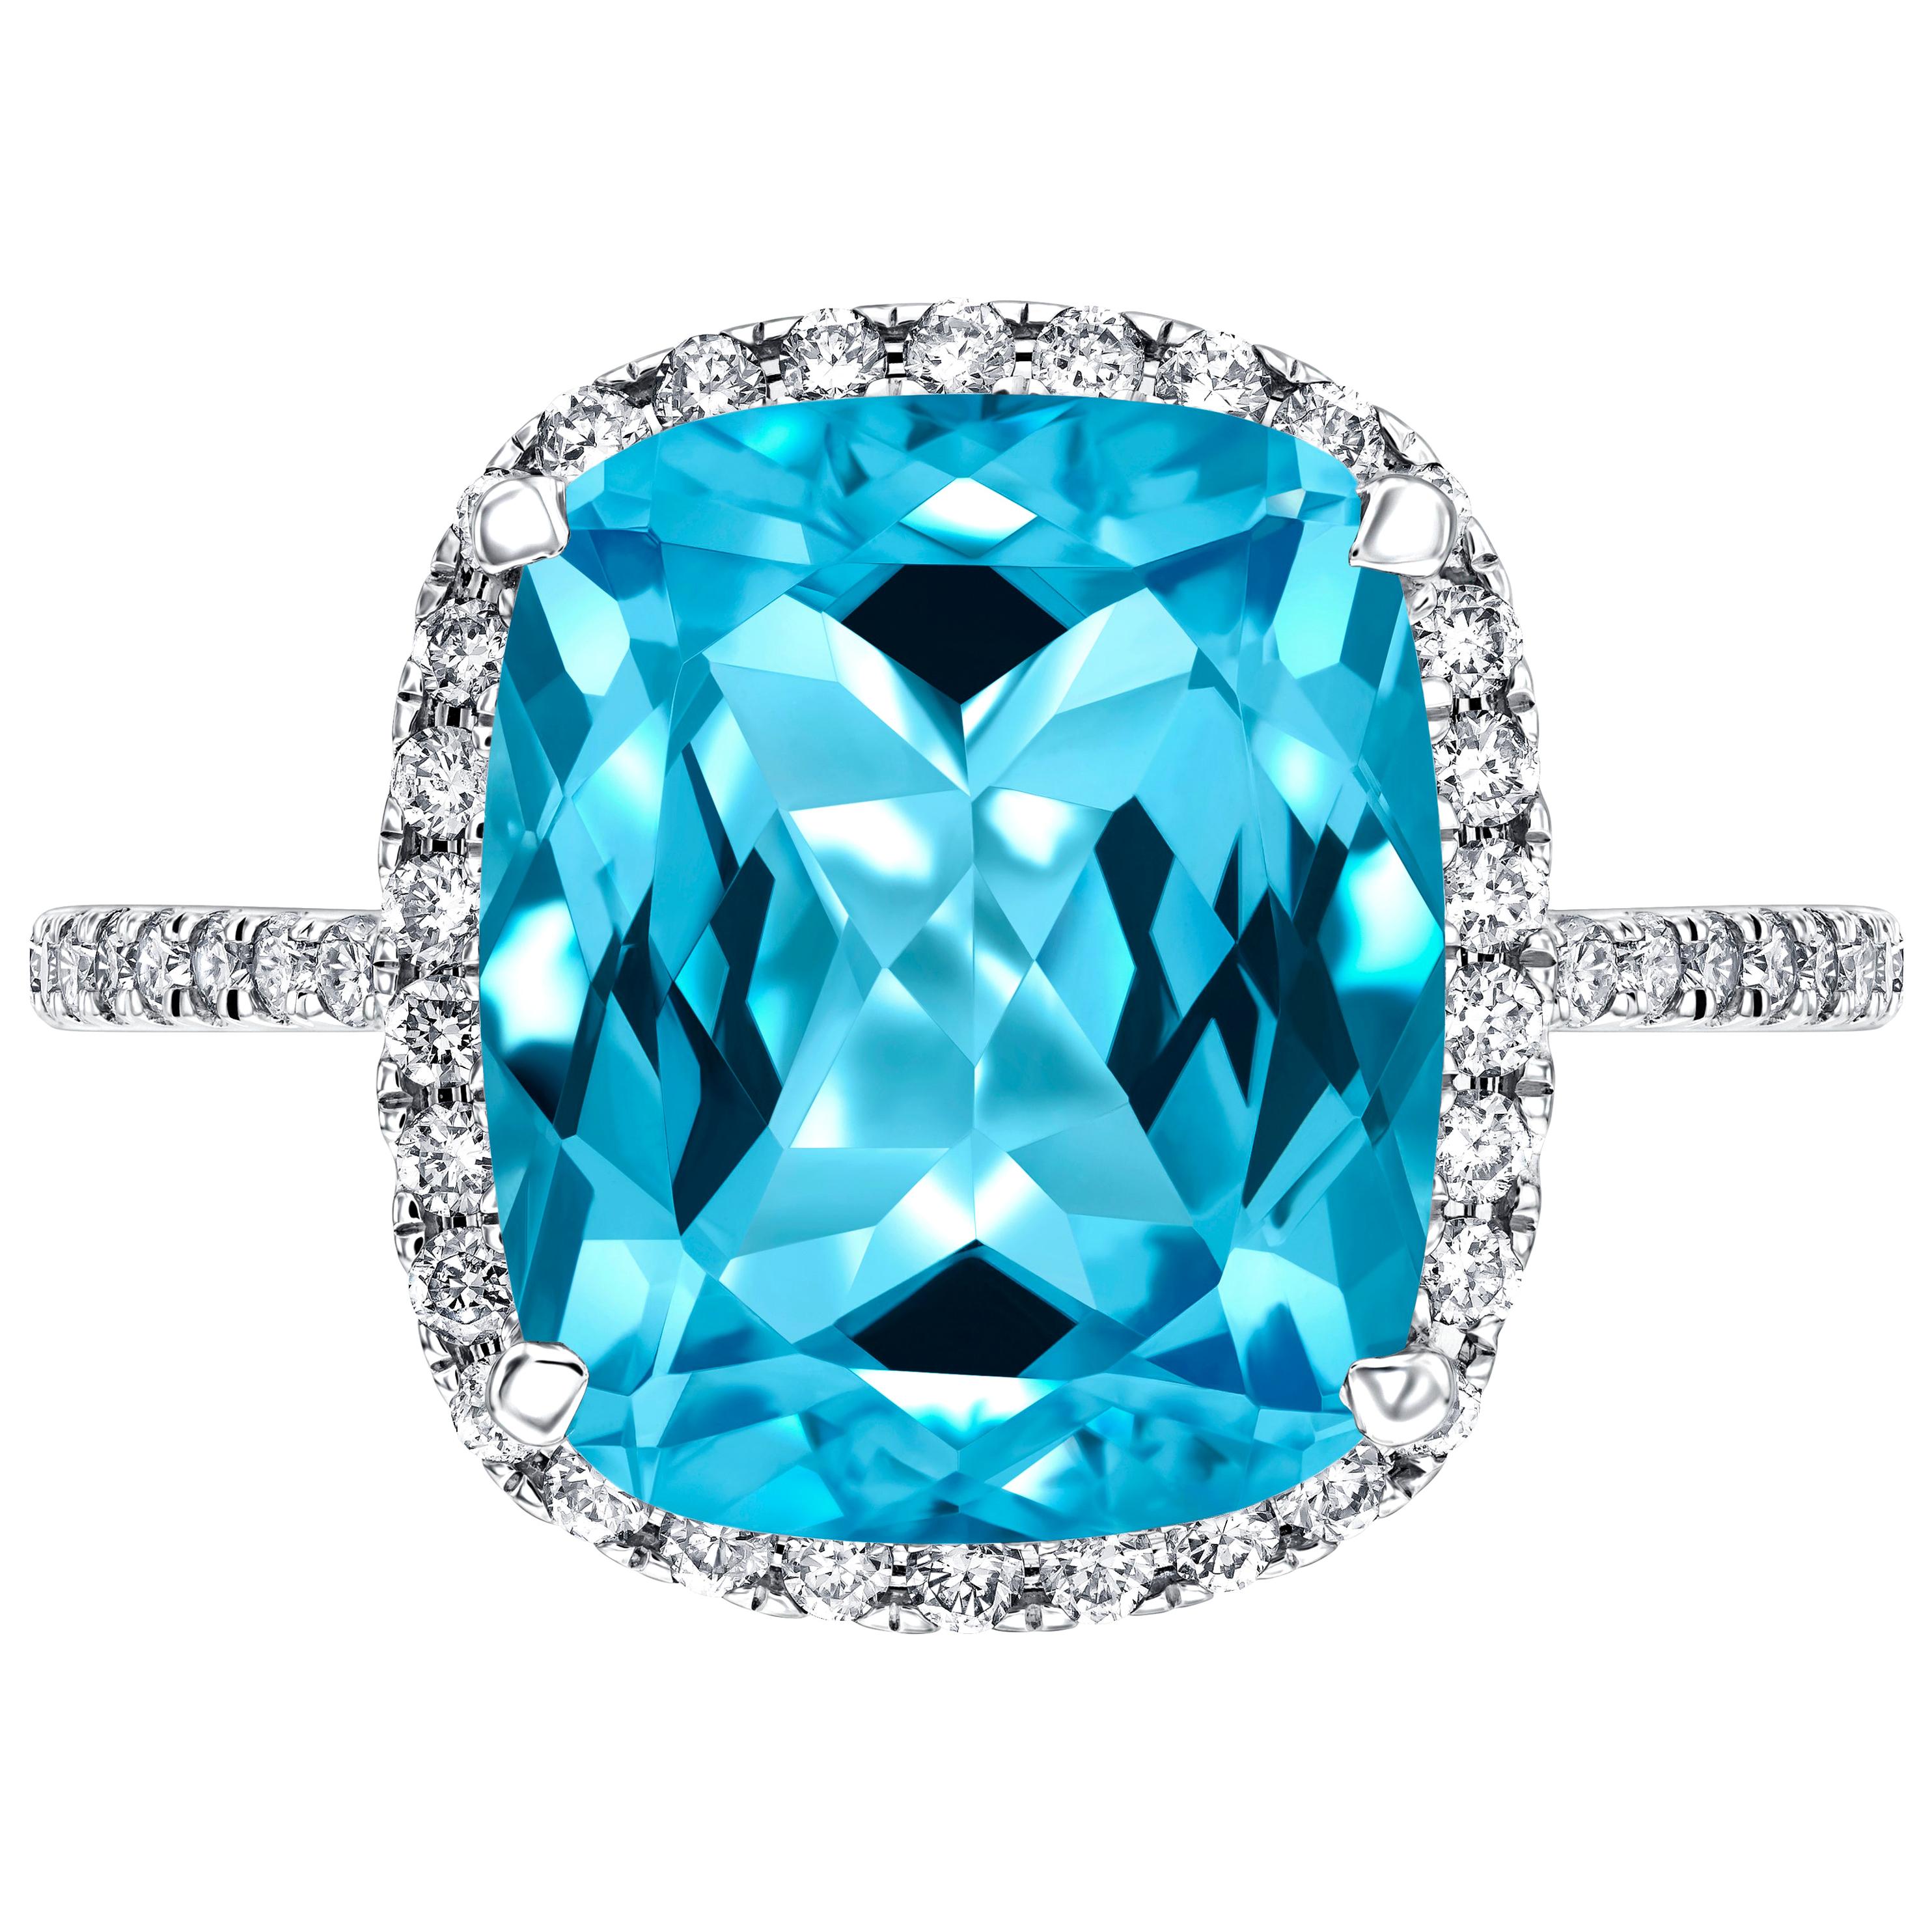 Une impressionnante bague de fiançailles de 6 carats (environ) en topaze bleue taillée en coussin, entourée d'un halo pavé et des deux côtés de la tige. Le poids total des diamants est de 0,38 carat de diamants ronds de taille brillant. 

Cette